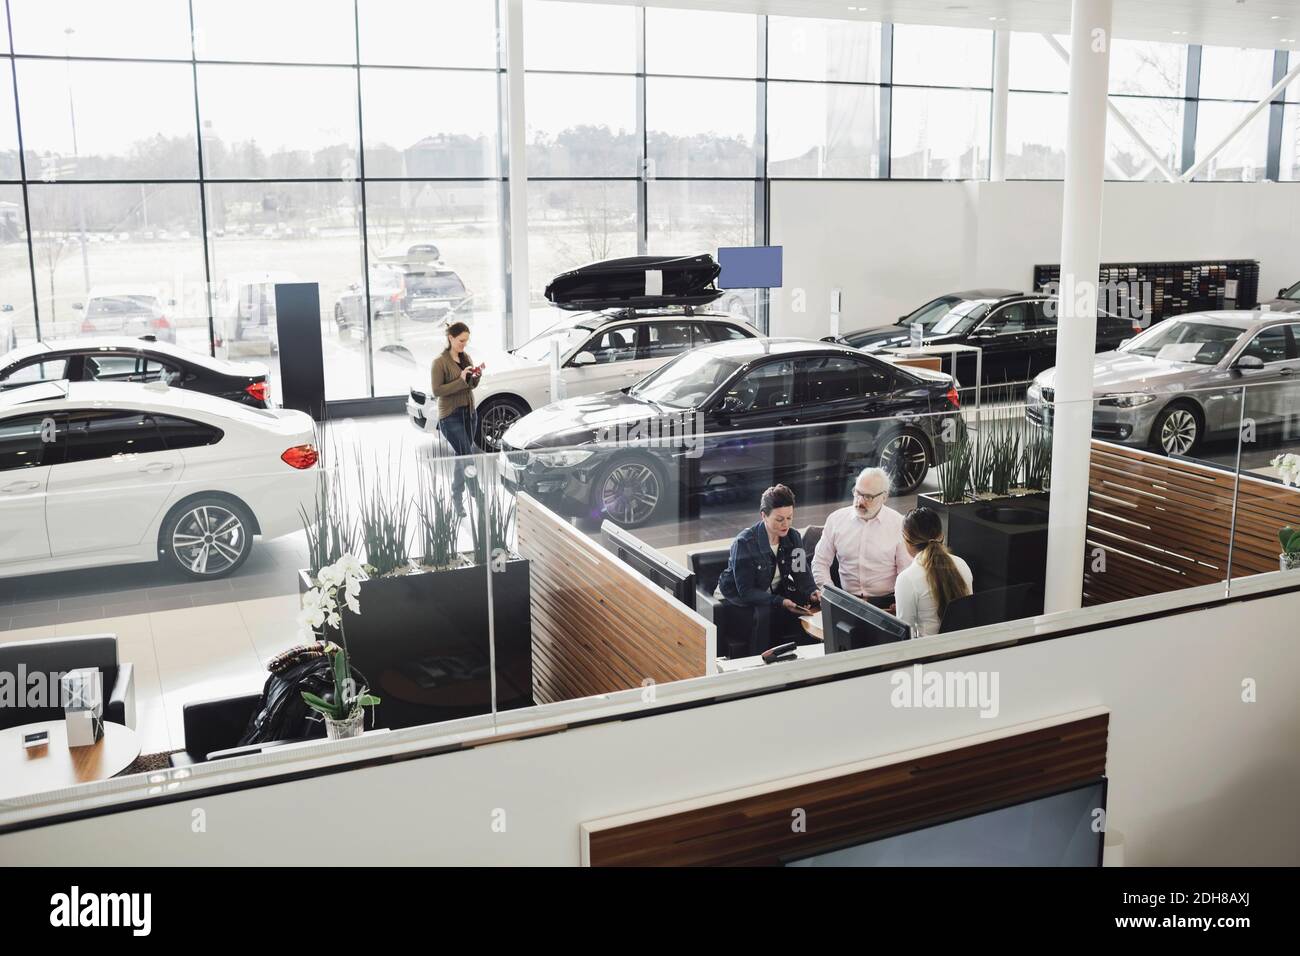 Addetto alle vendite di automobili che parla con i clienti alla reception nello showroom Foto Stock